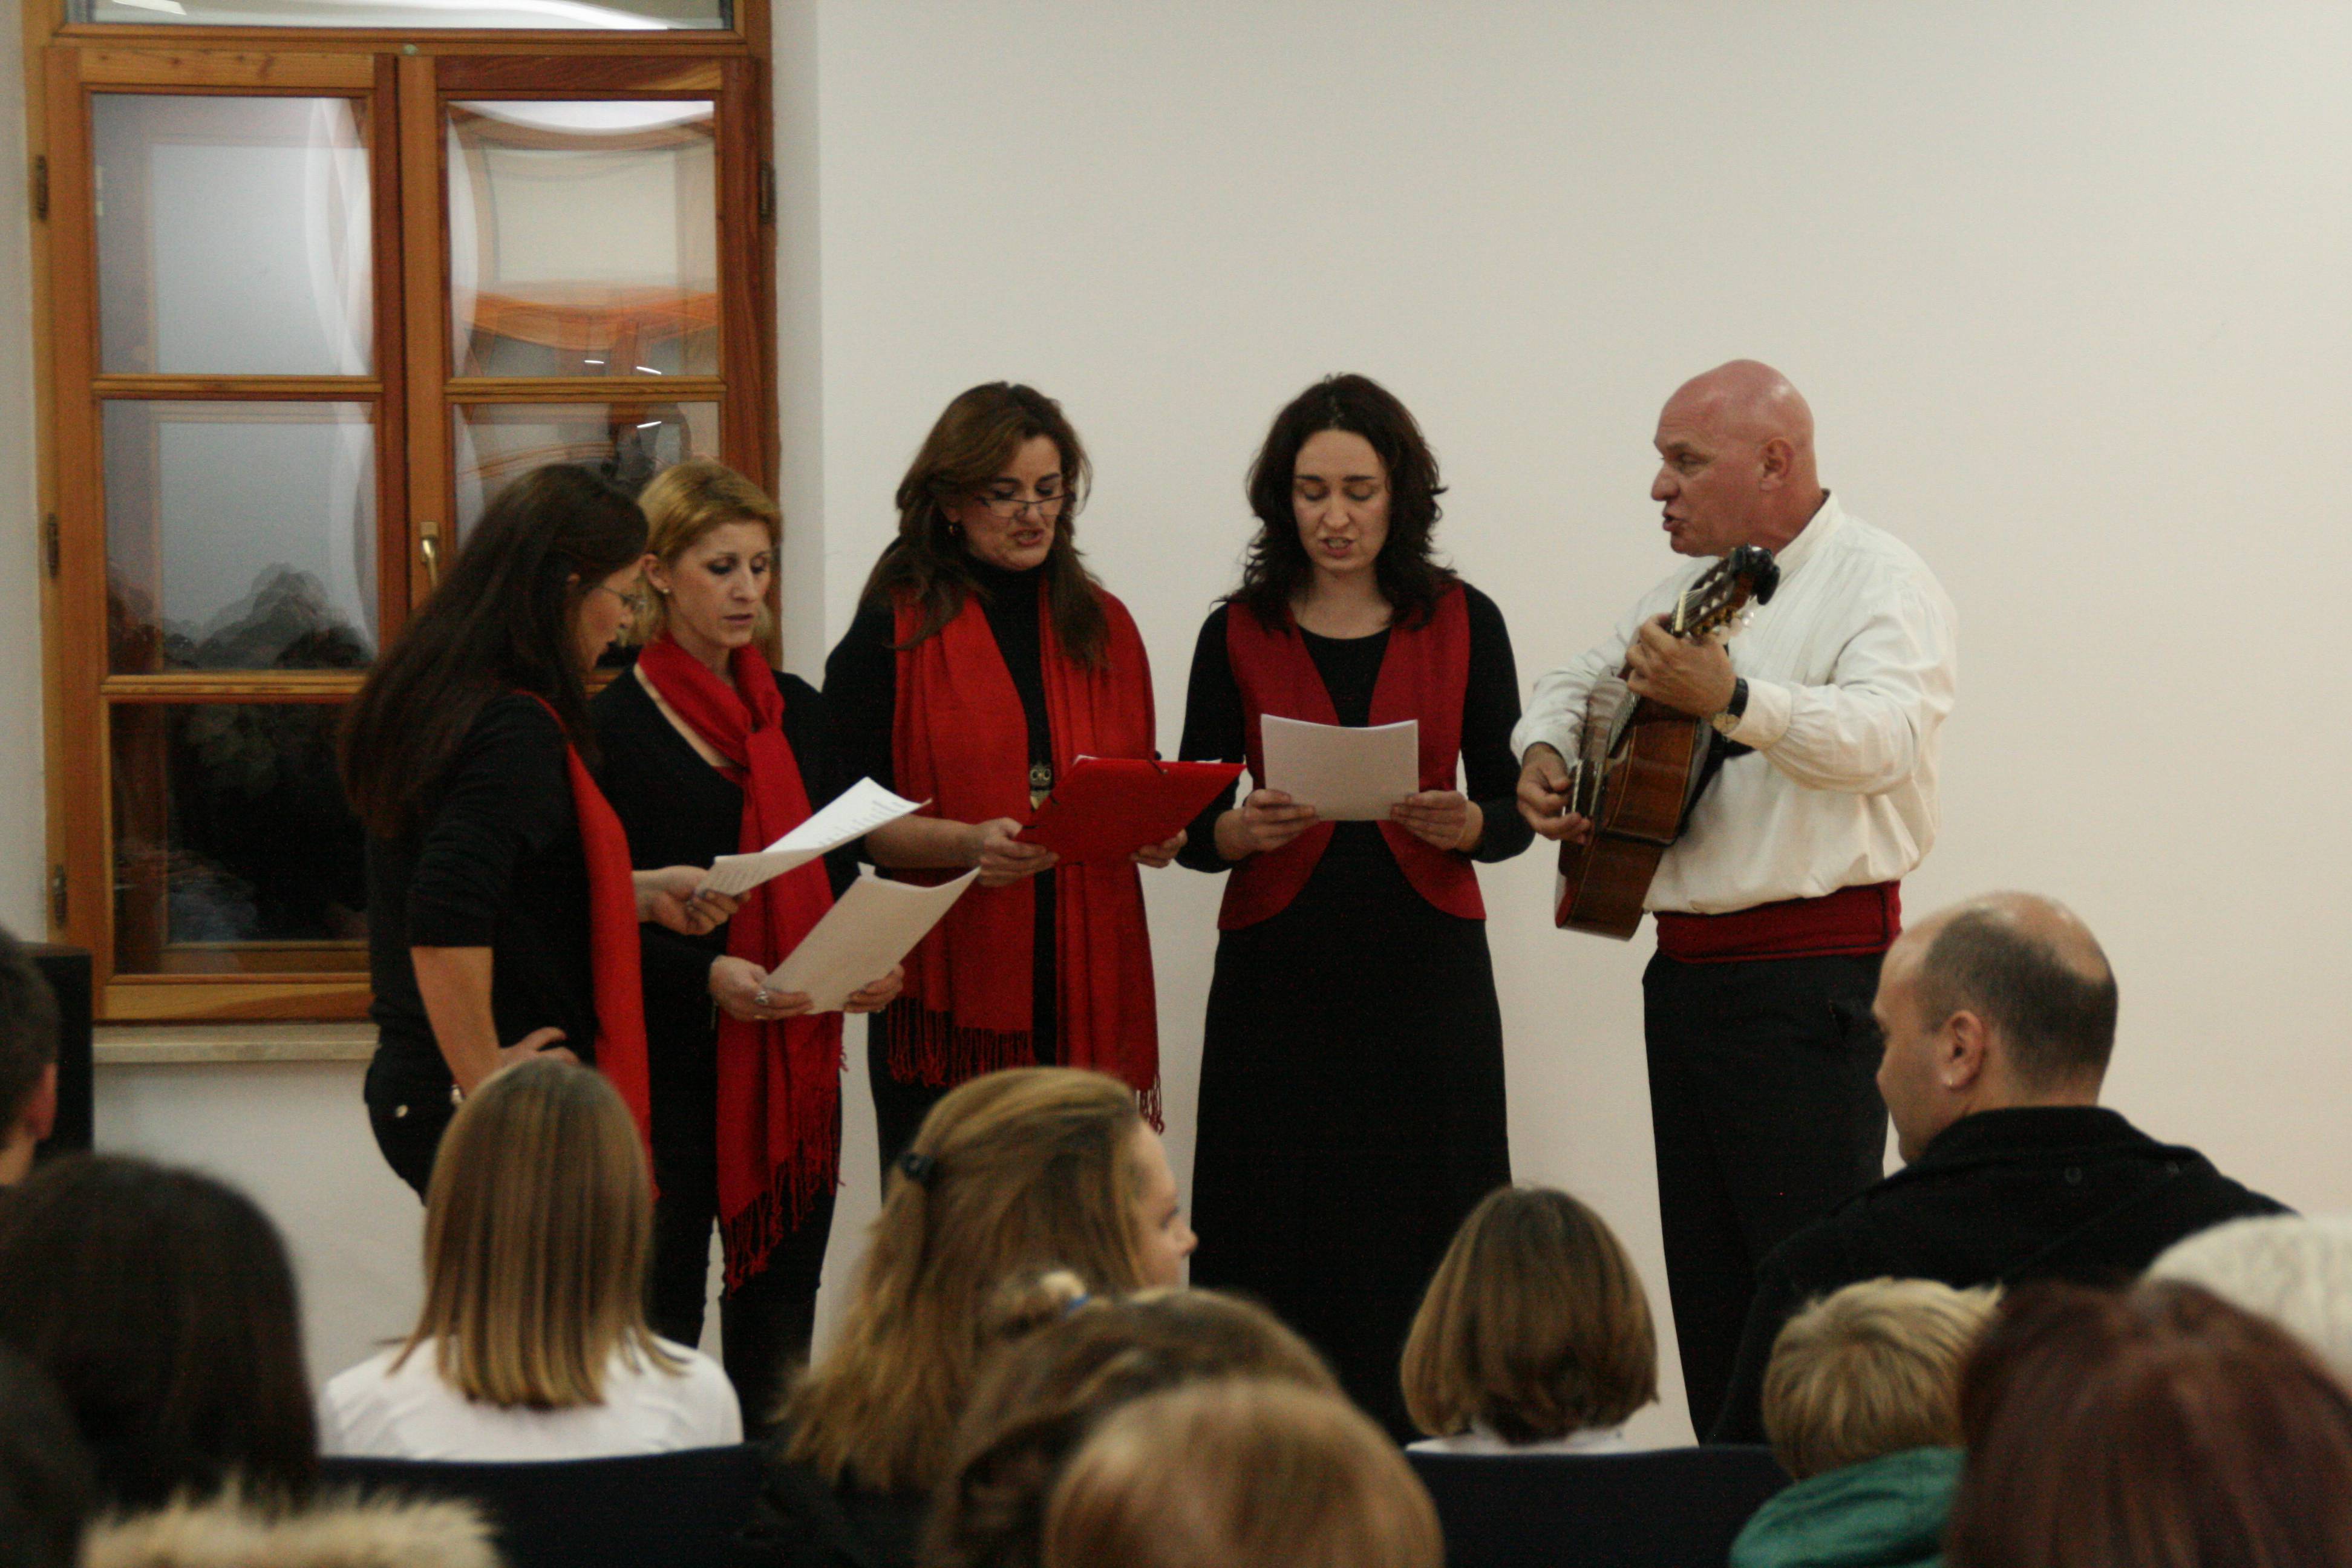 Božićni koncert u Ogranku Arbanasi 2013.